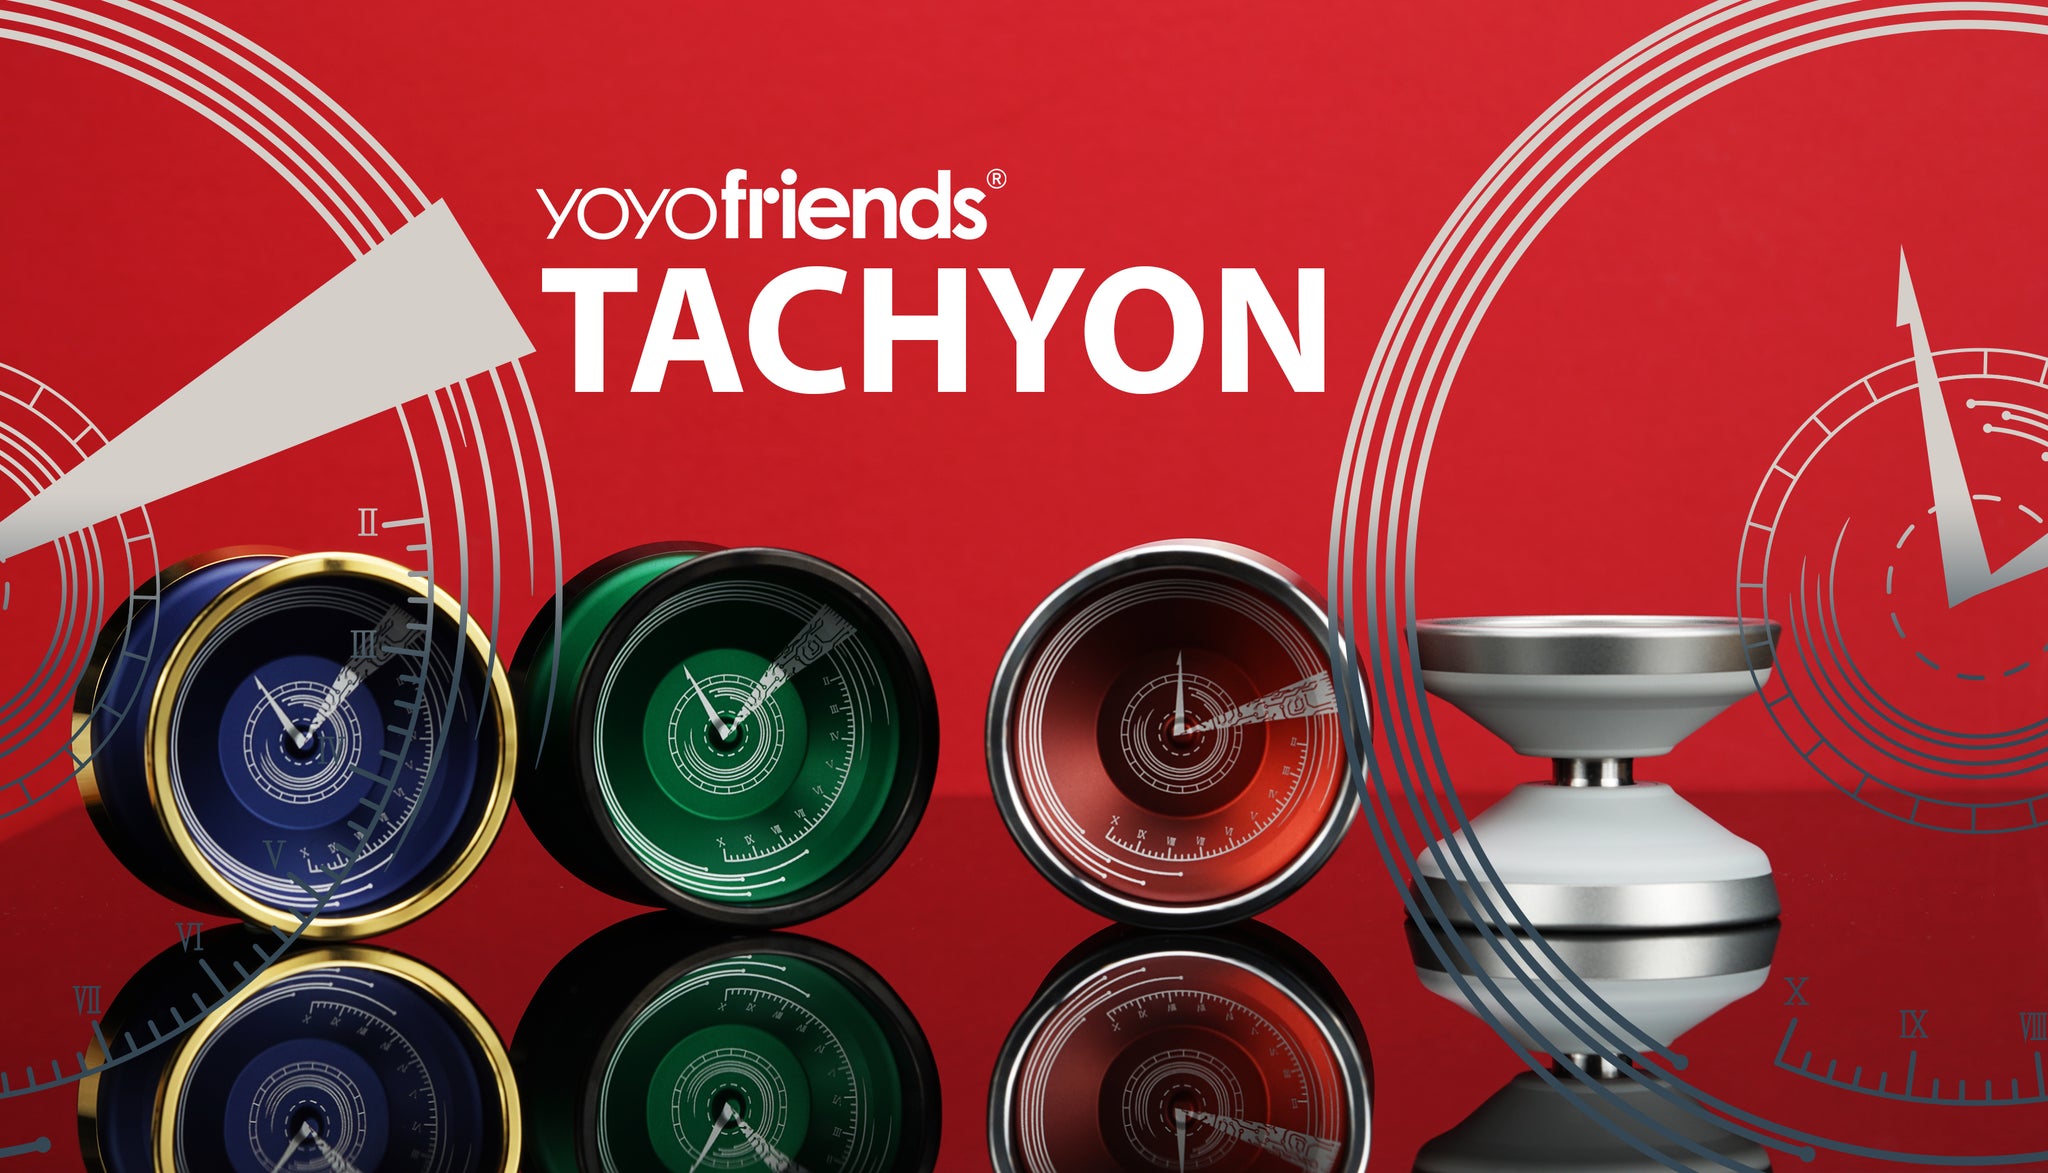 Tachyon by YoYoFriends